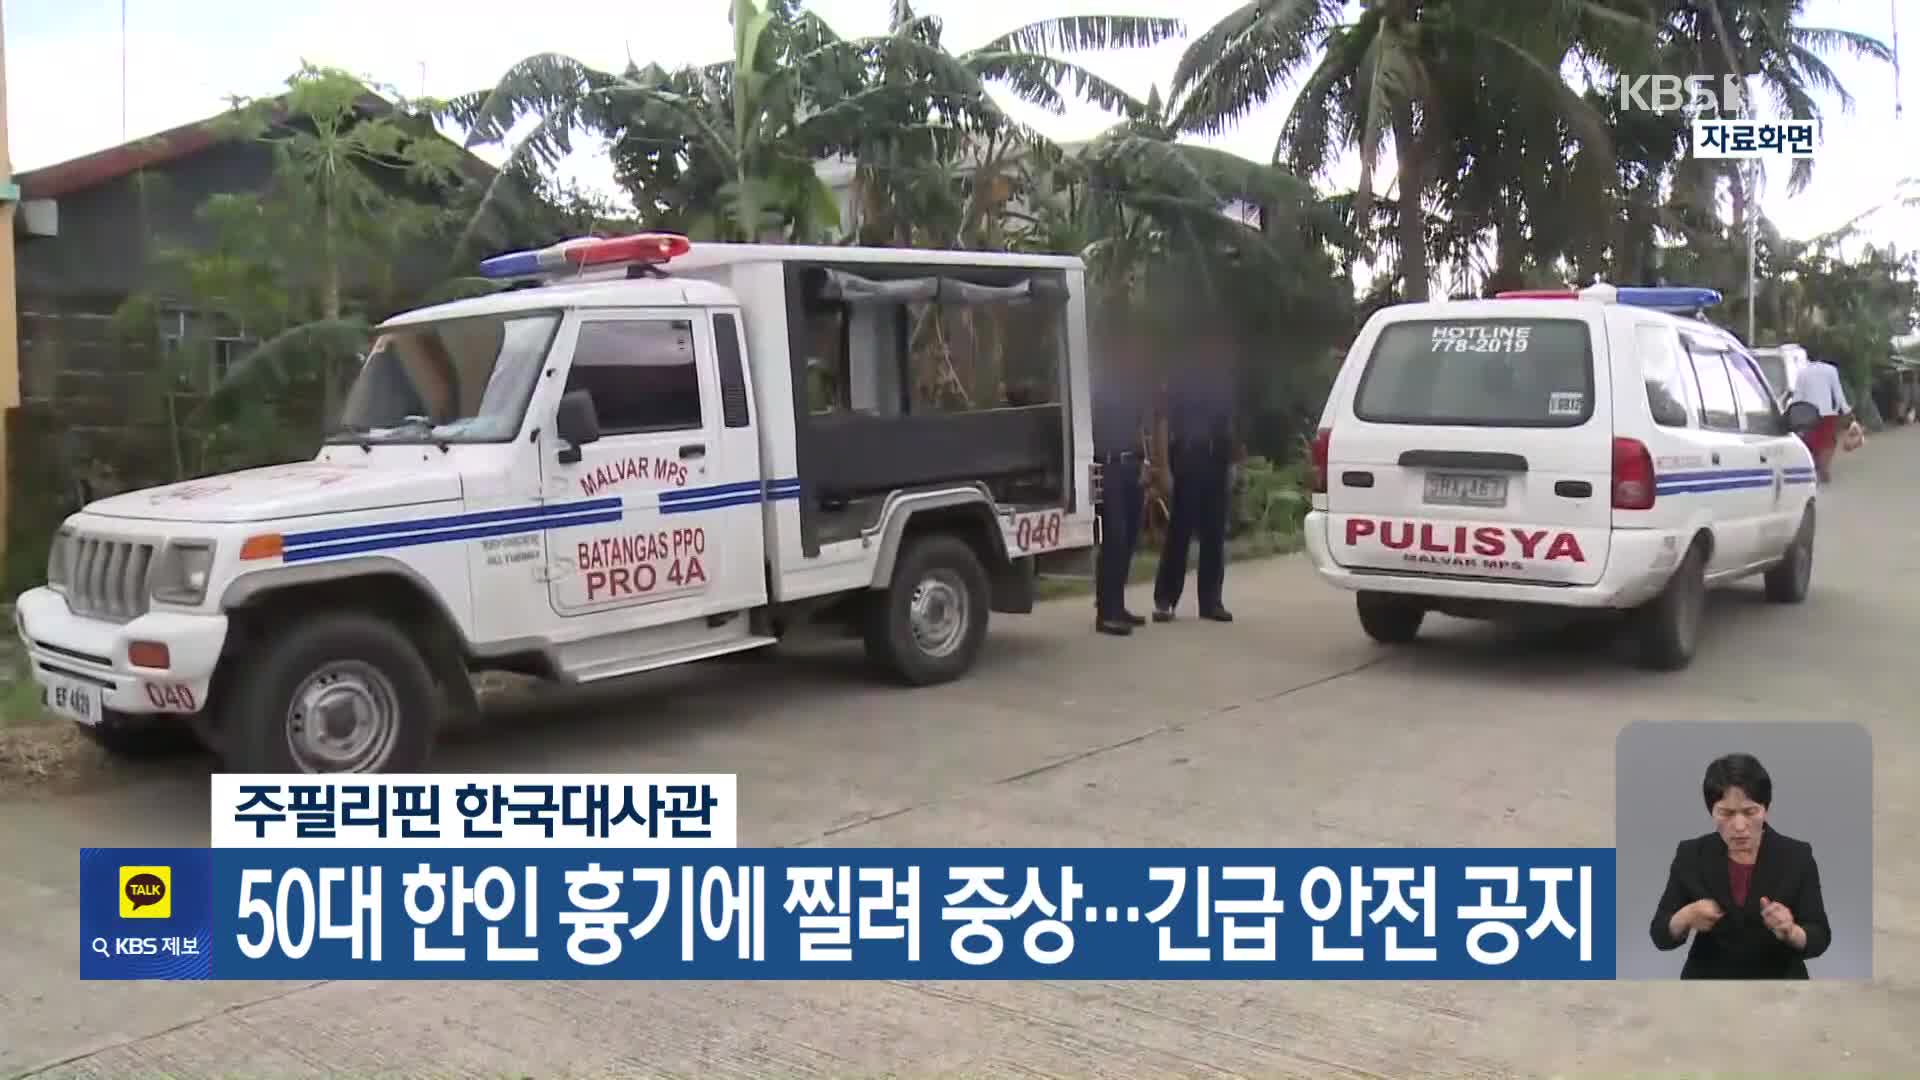 주필리핀 한국대사관, 50대 한인 흉기에 찔려 중상…긴급 안전 공지